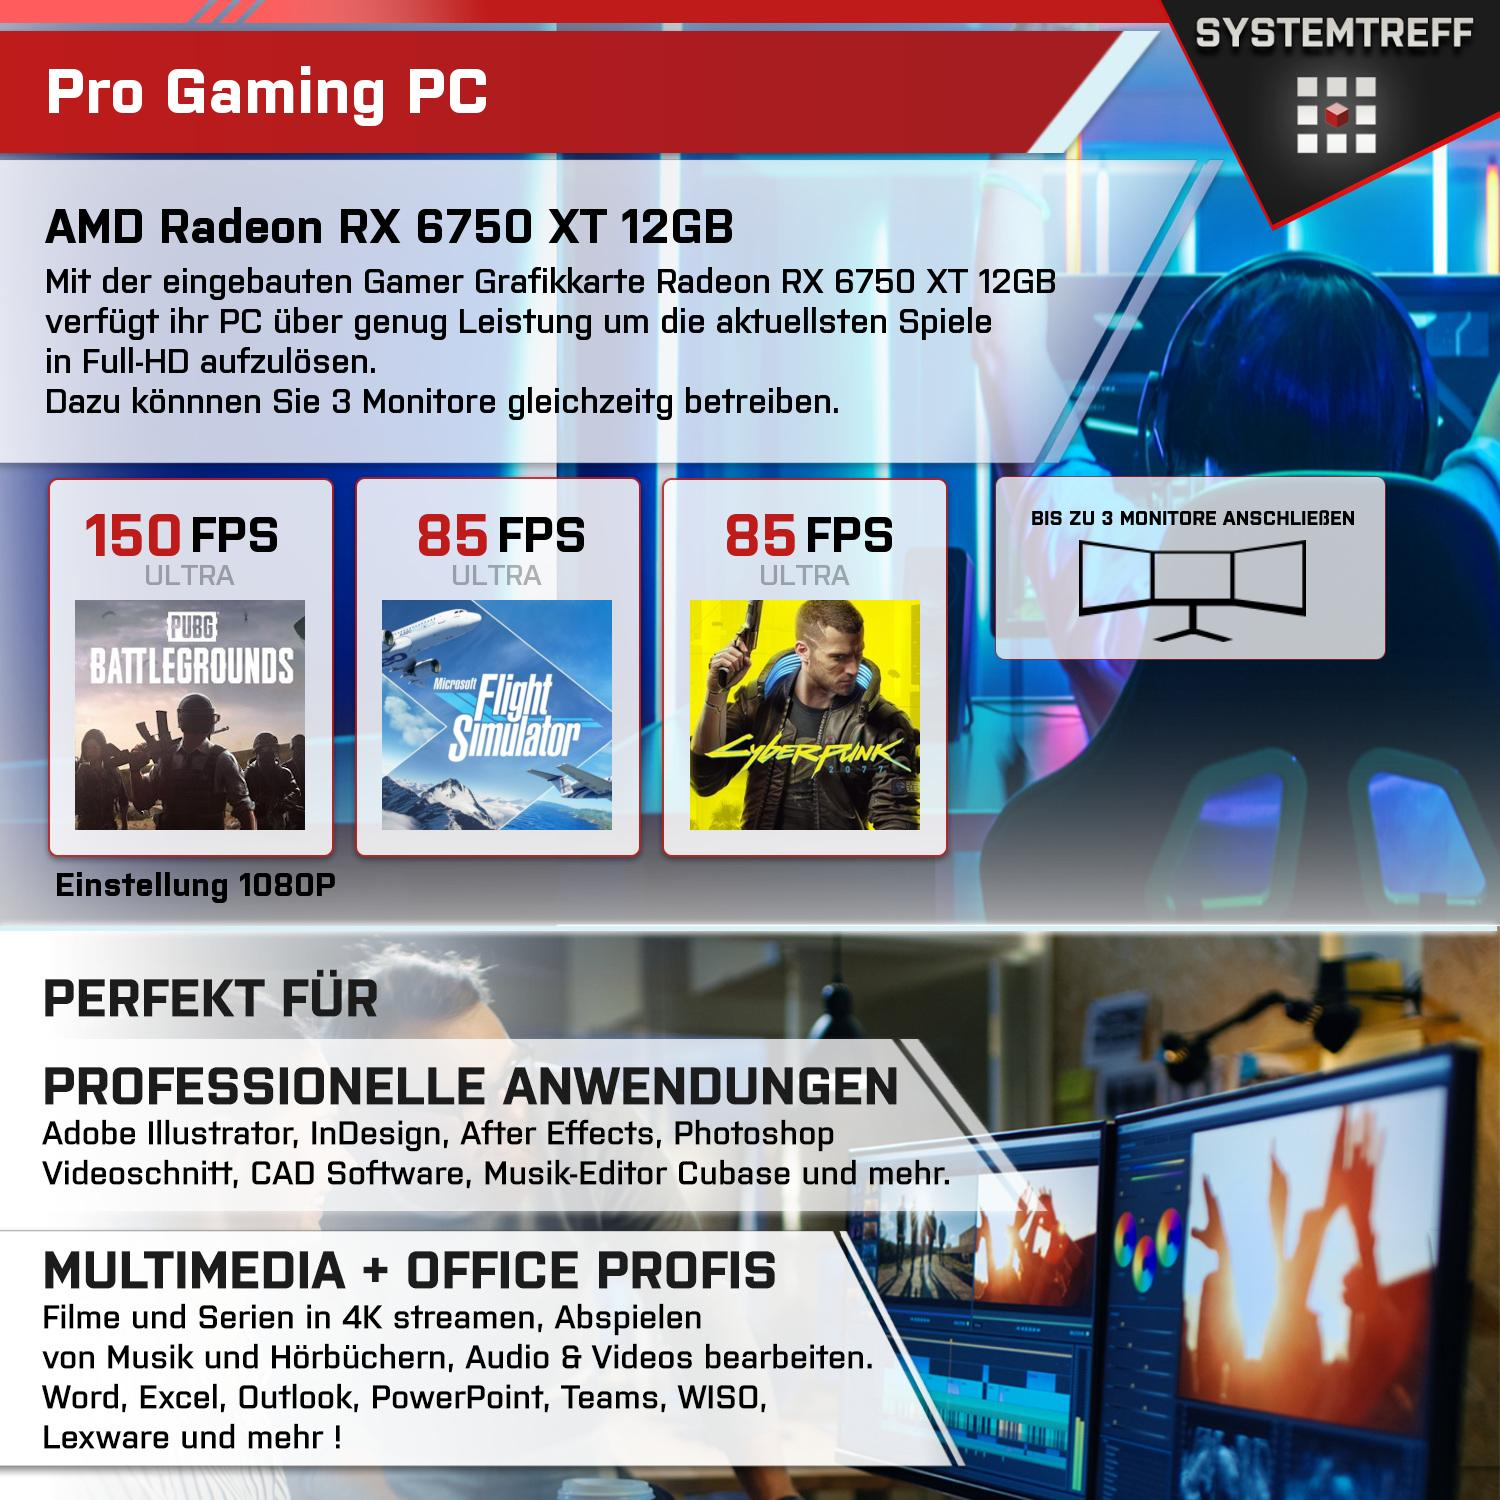 SYSTEMTREFF Gaming Komplett Intel mSSD, 12 RX GB 1000 6750 Komplett XT i9-11900K 32 GB i9-11900K, RAM, Core PC mit Radeon GB AMD 12GB Prozessor, GDDR6